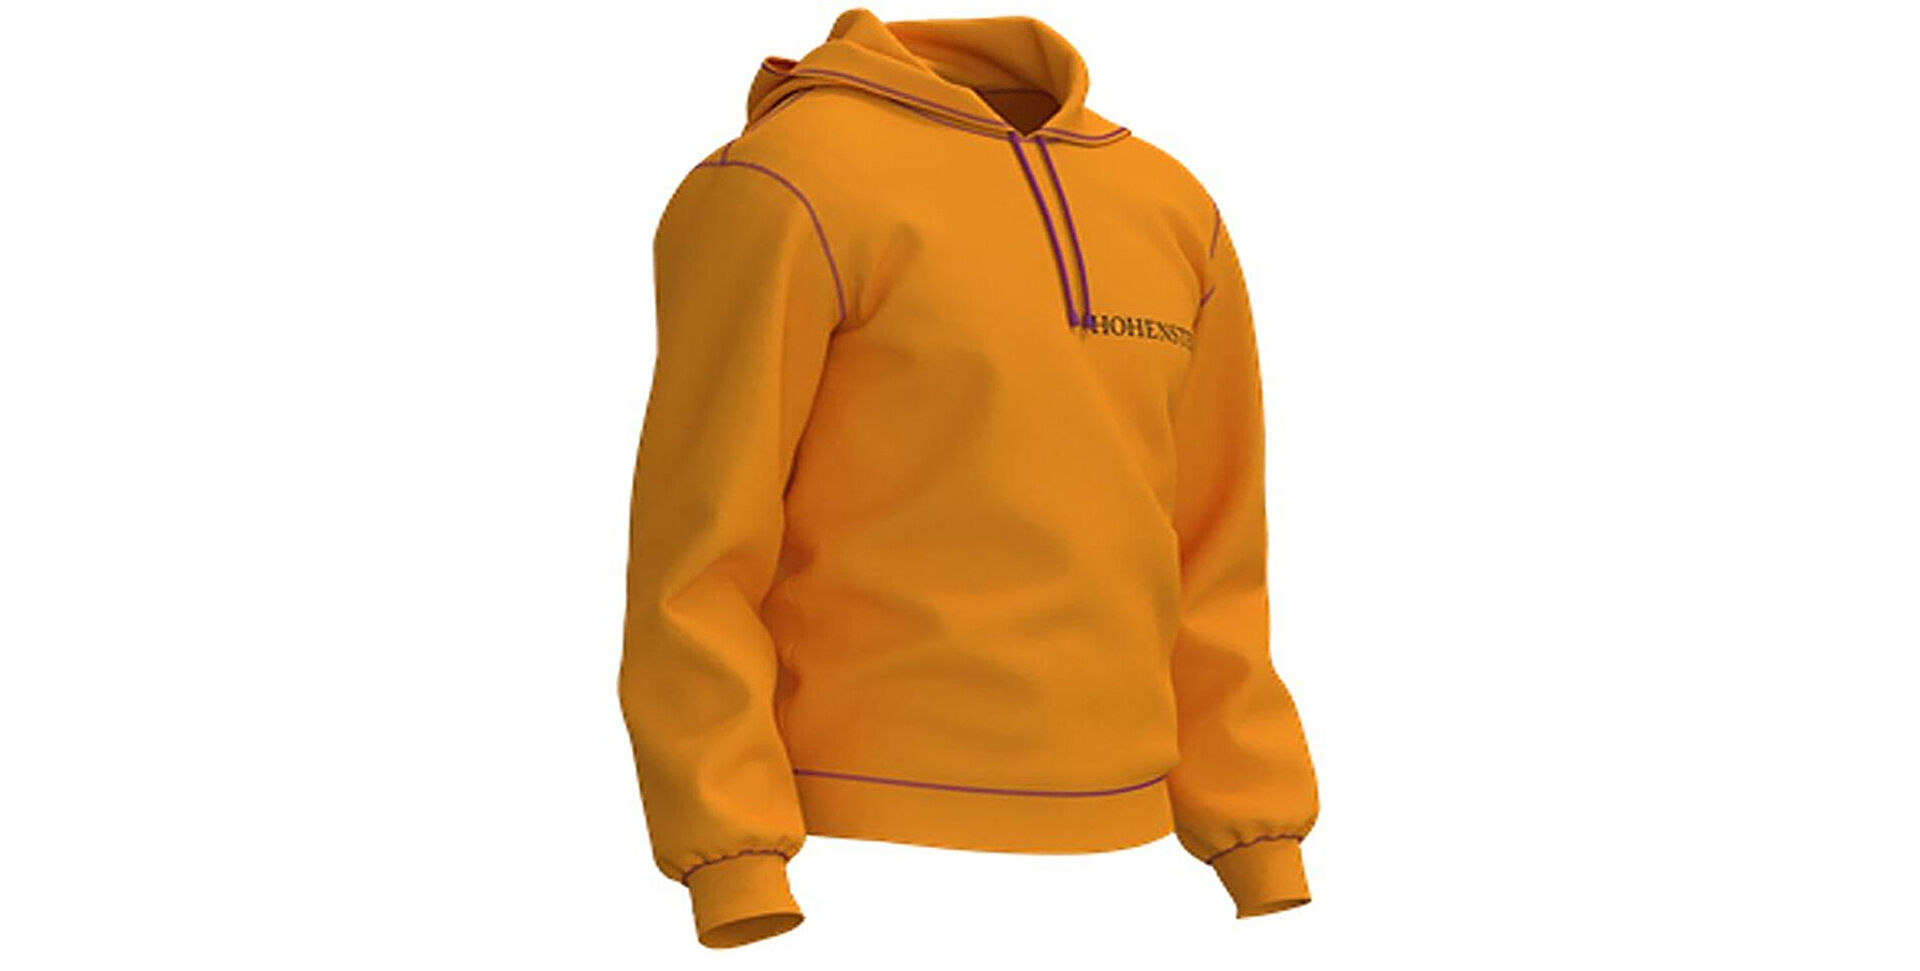 Digital 3D garment - orange sweatshirt with Hohenstein logo